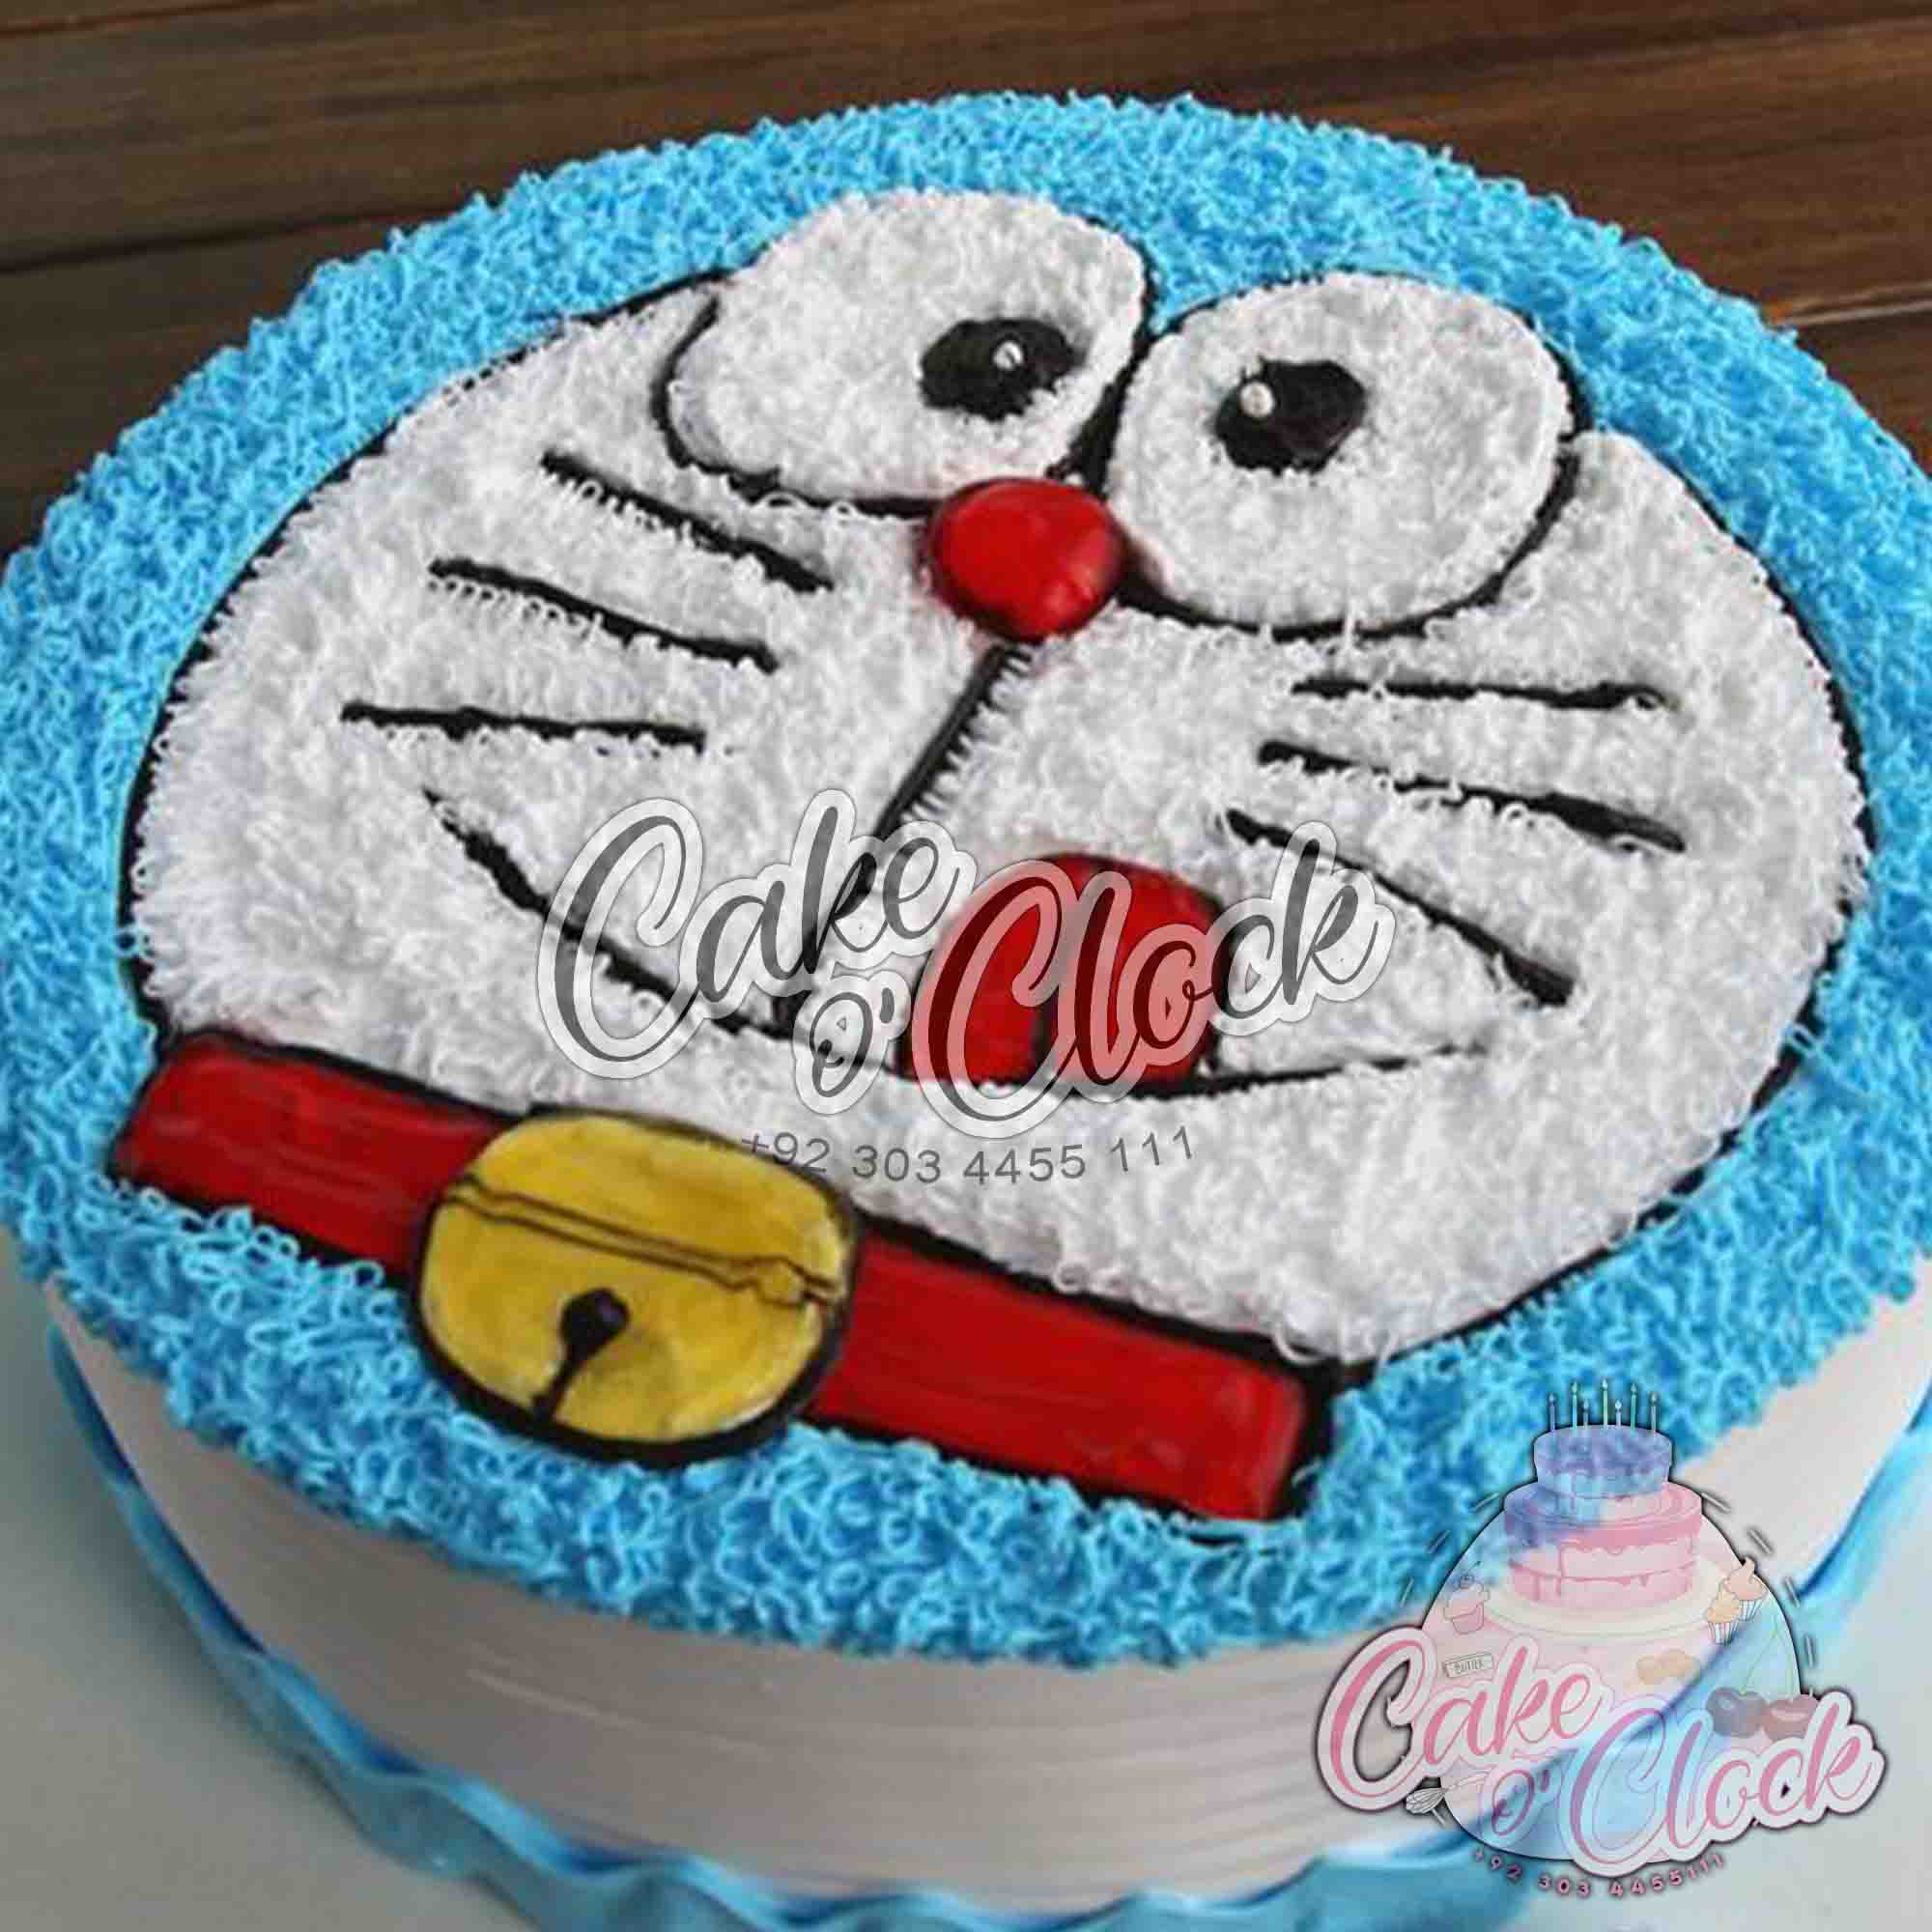 Doraemon cake 1 kg 500 gm pineapple